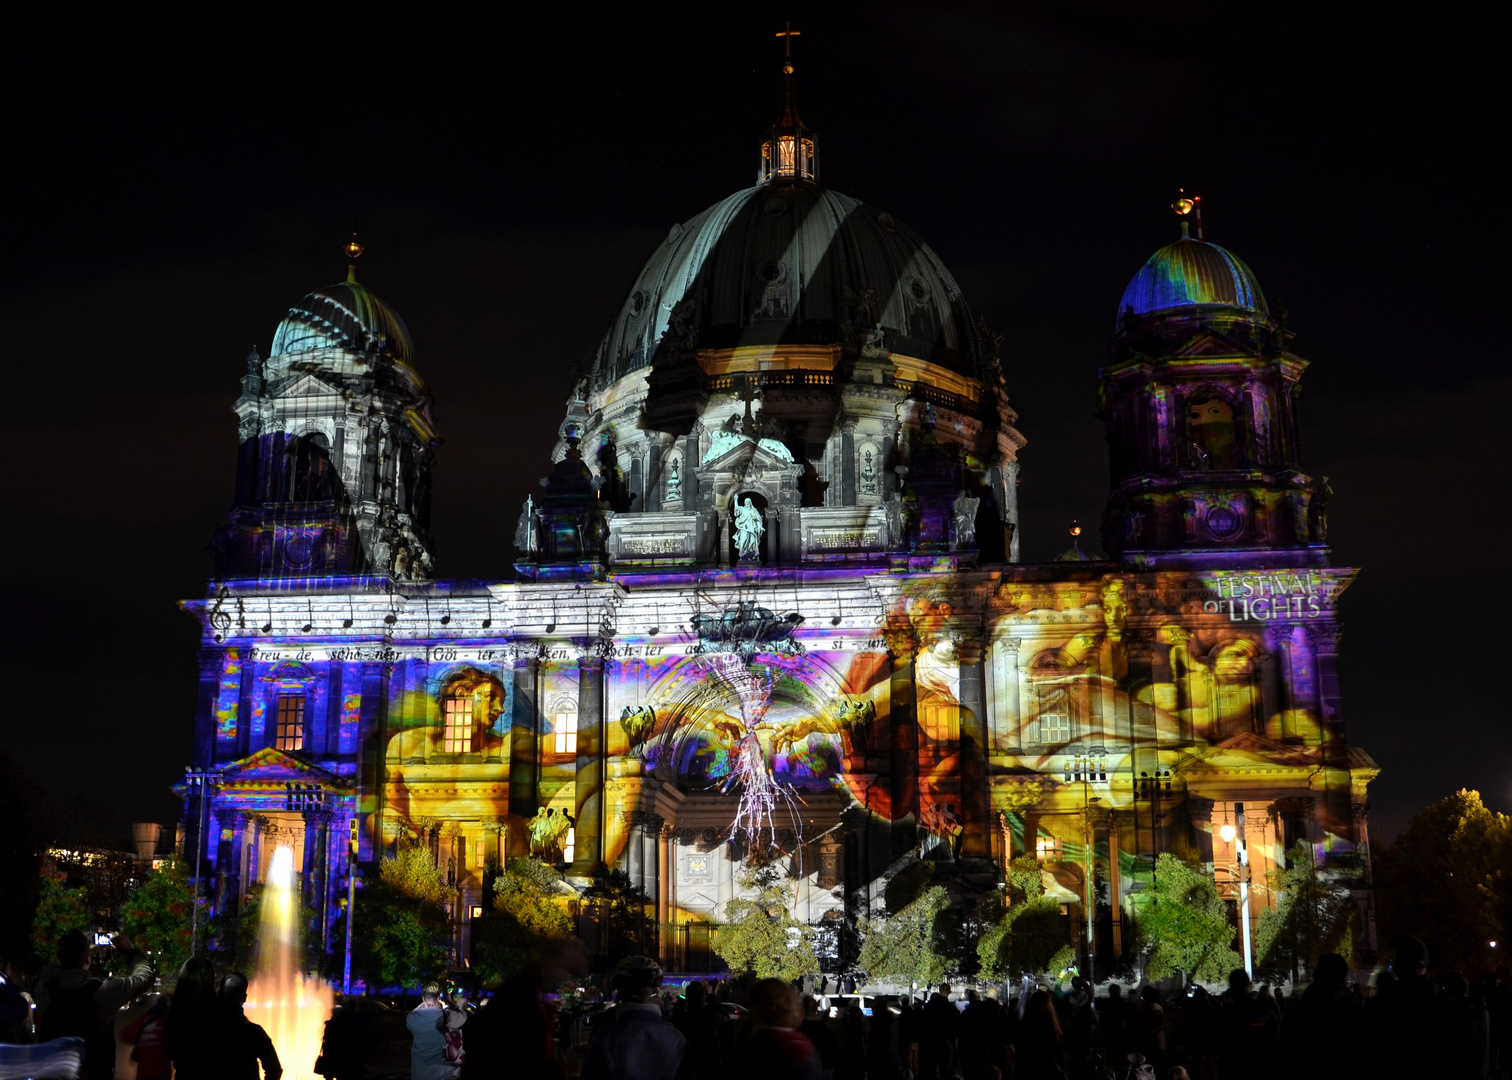 Festival of Lights Berlin 2014 - 03